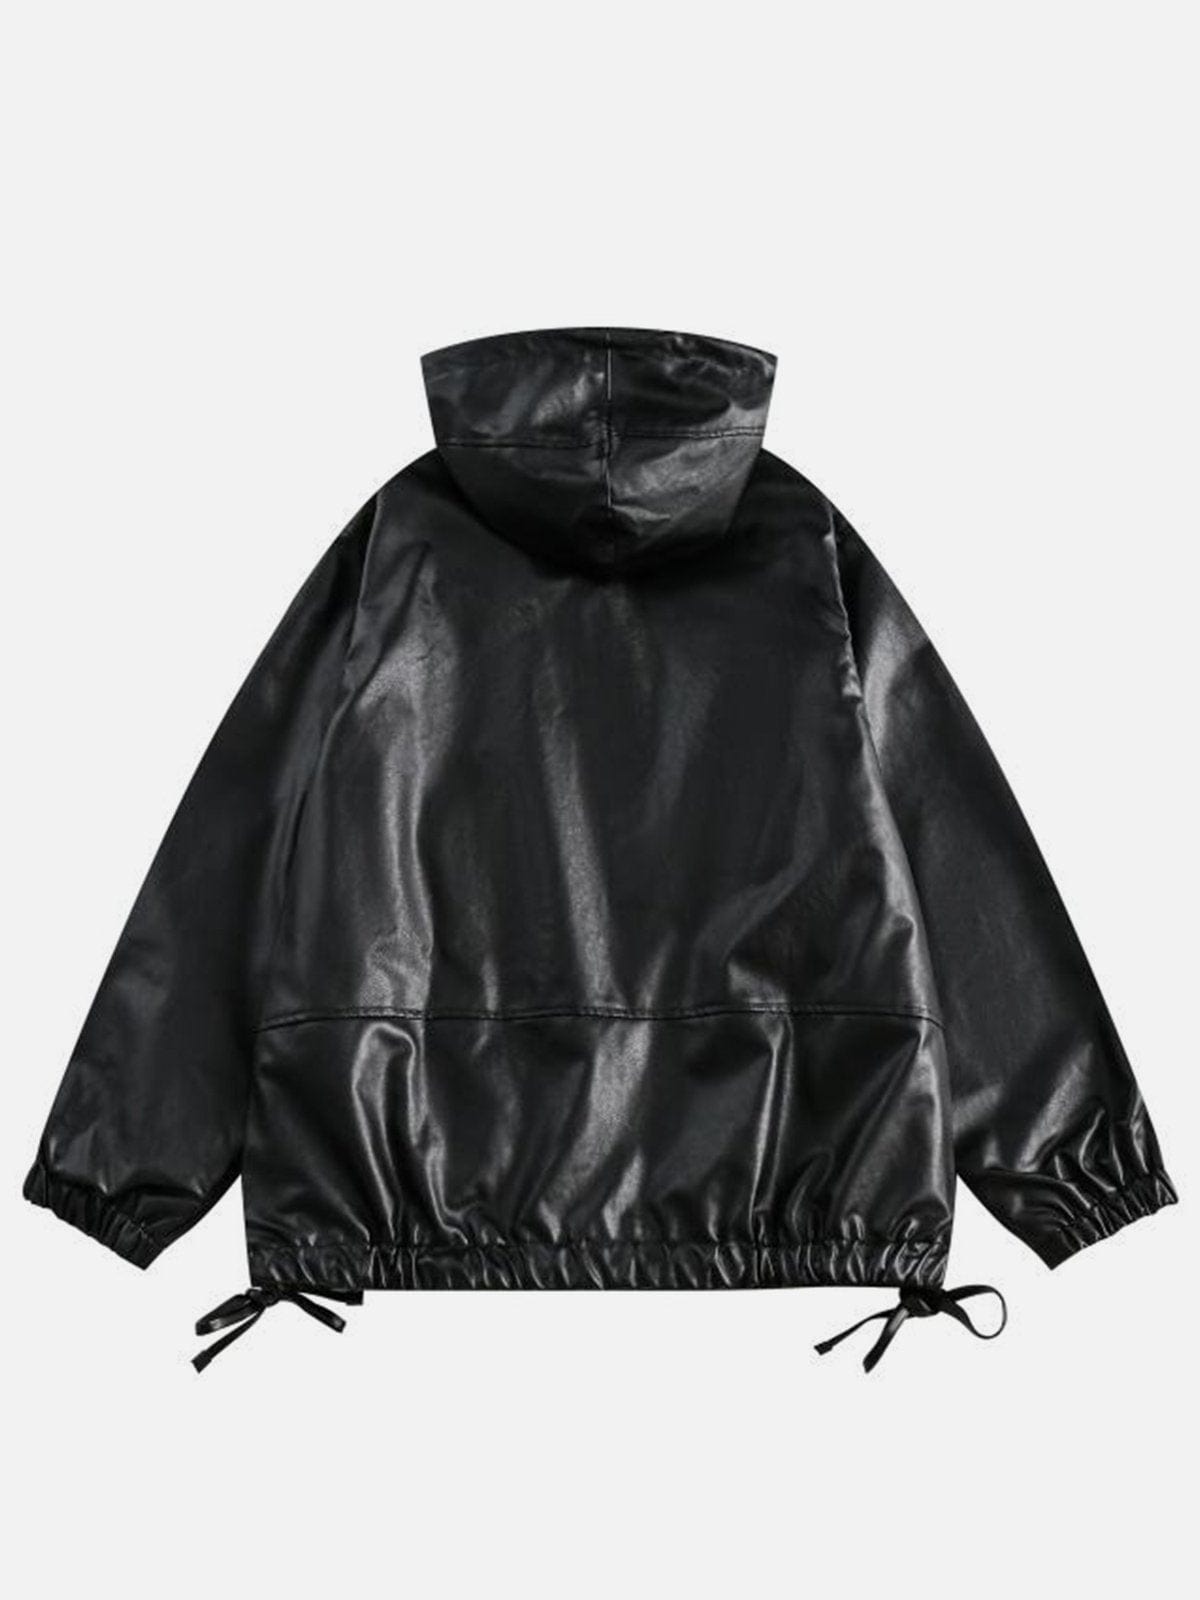 NEV Streetwear Hooded Leather Jacket